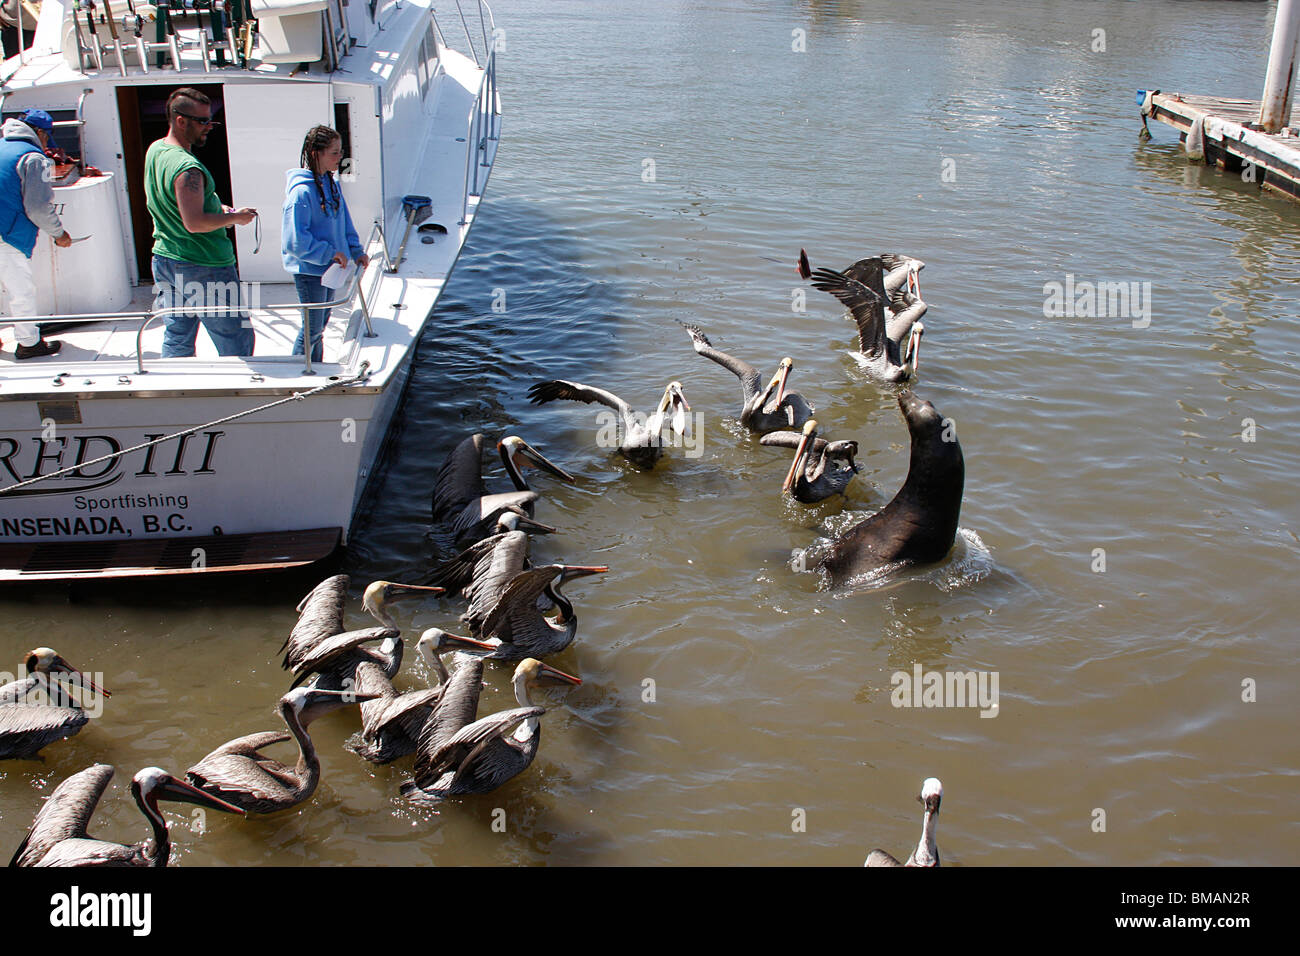 Bateau de pêche sportive entouré par des Pélicans et un sceau en attente de restes de poissons jetés du bateau.Ensenada,Mexique Banque D'Images